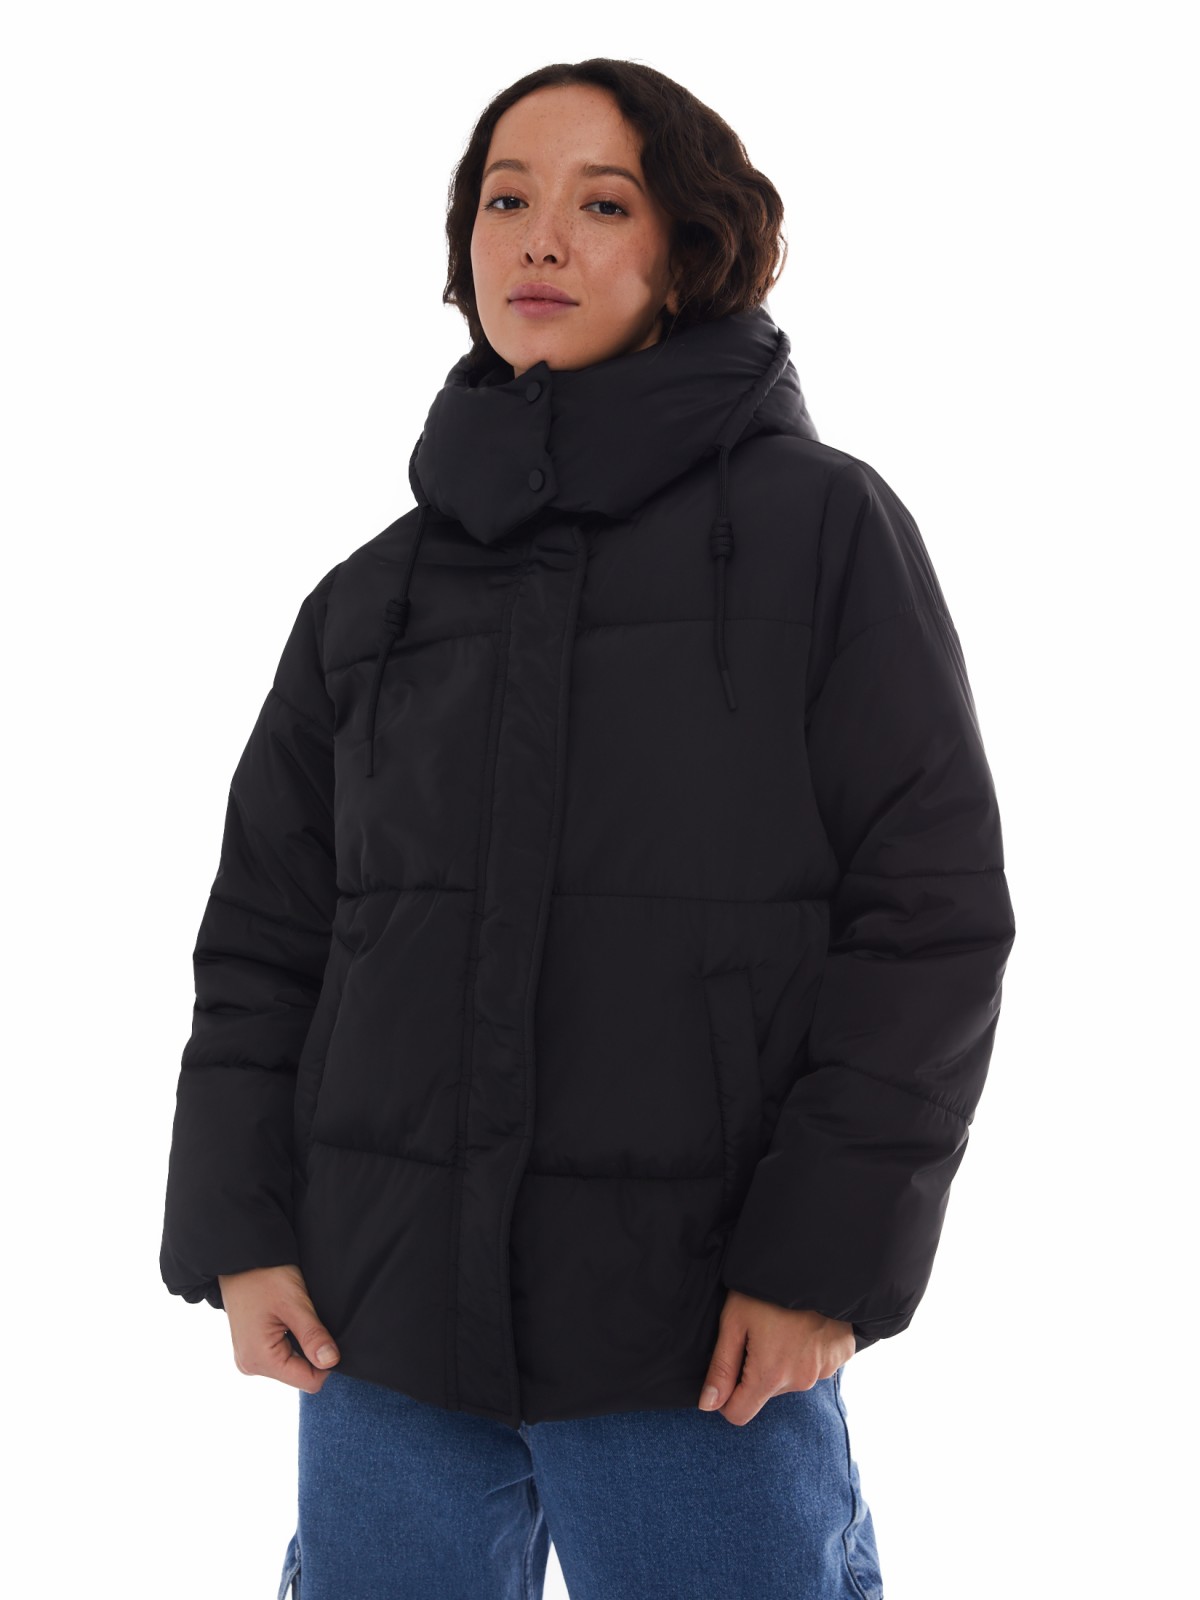 Тёплая укороченная дутая куртка с капюшоном zolla 024125112434, цвет черный, размер XS - фото 4